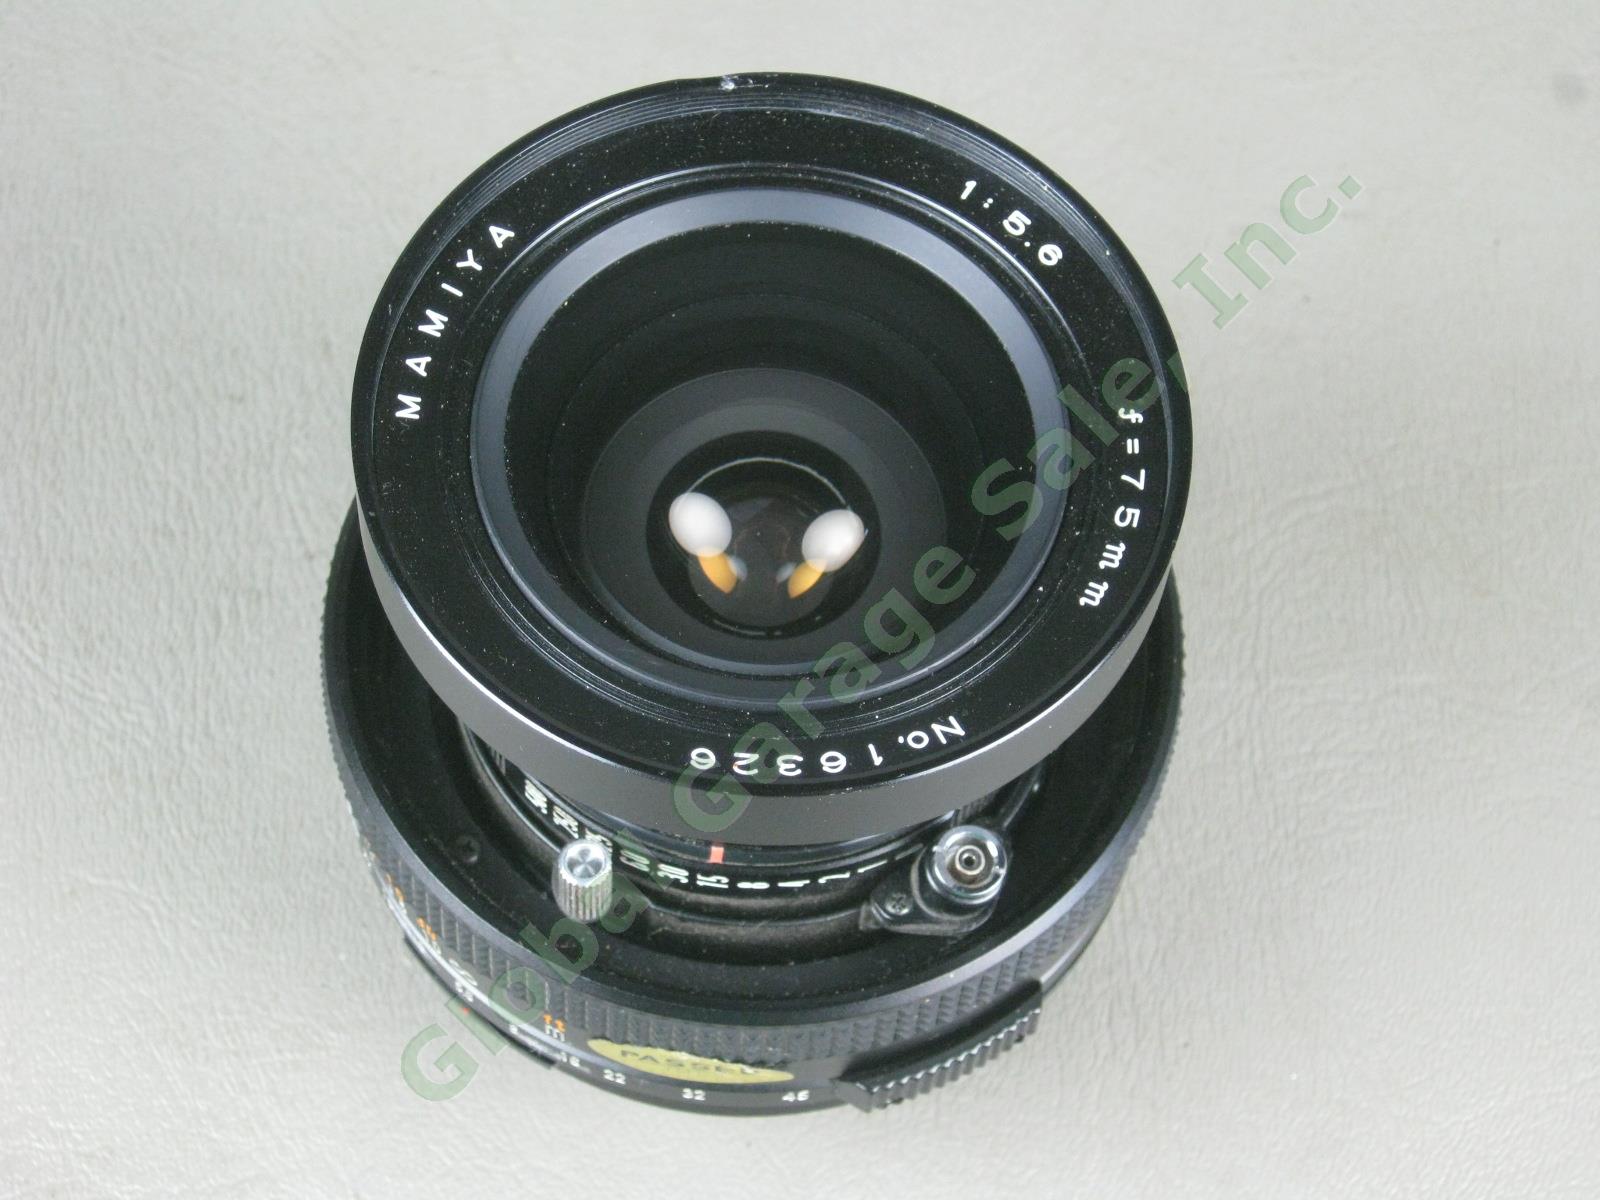 Mamiya 75mm f/5.6 1:5.6 Manual Focus Camera Lens For Polaroid 600 SE NO RESERVE! 1